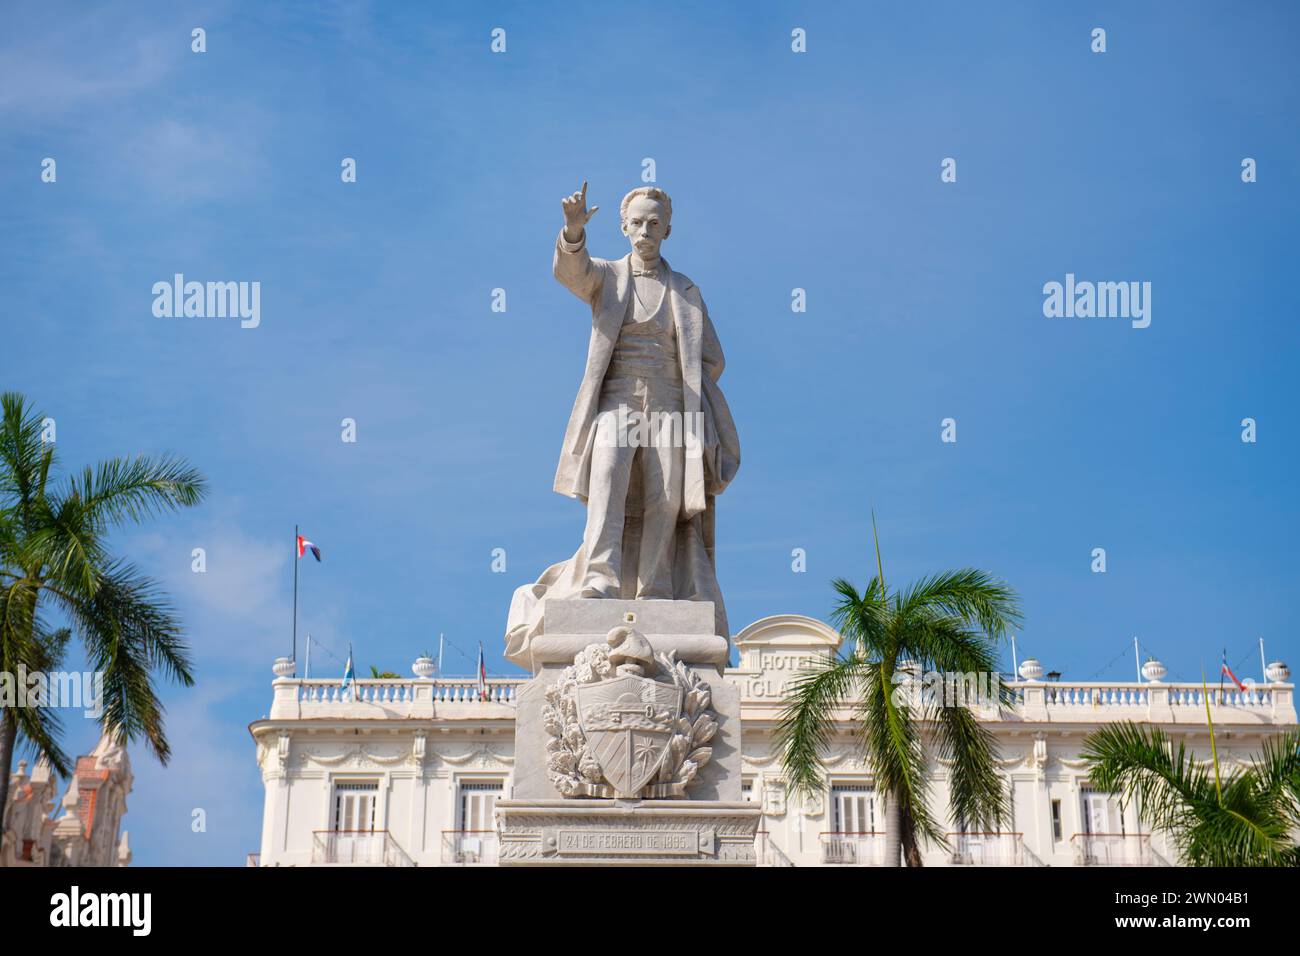 Statue de Jose Marti (Estatua a Jose Marti) au Parc Central (Parque Central) dans la vieille Havane (la Habana Vieja), Cuba. La vieille Havane est un site du patrimoine mondial. Banque D'Images